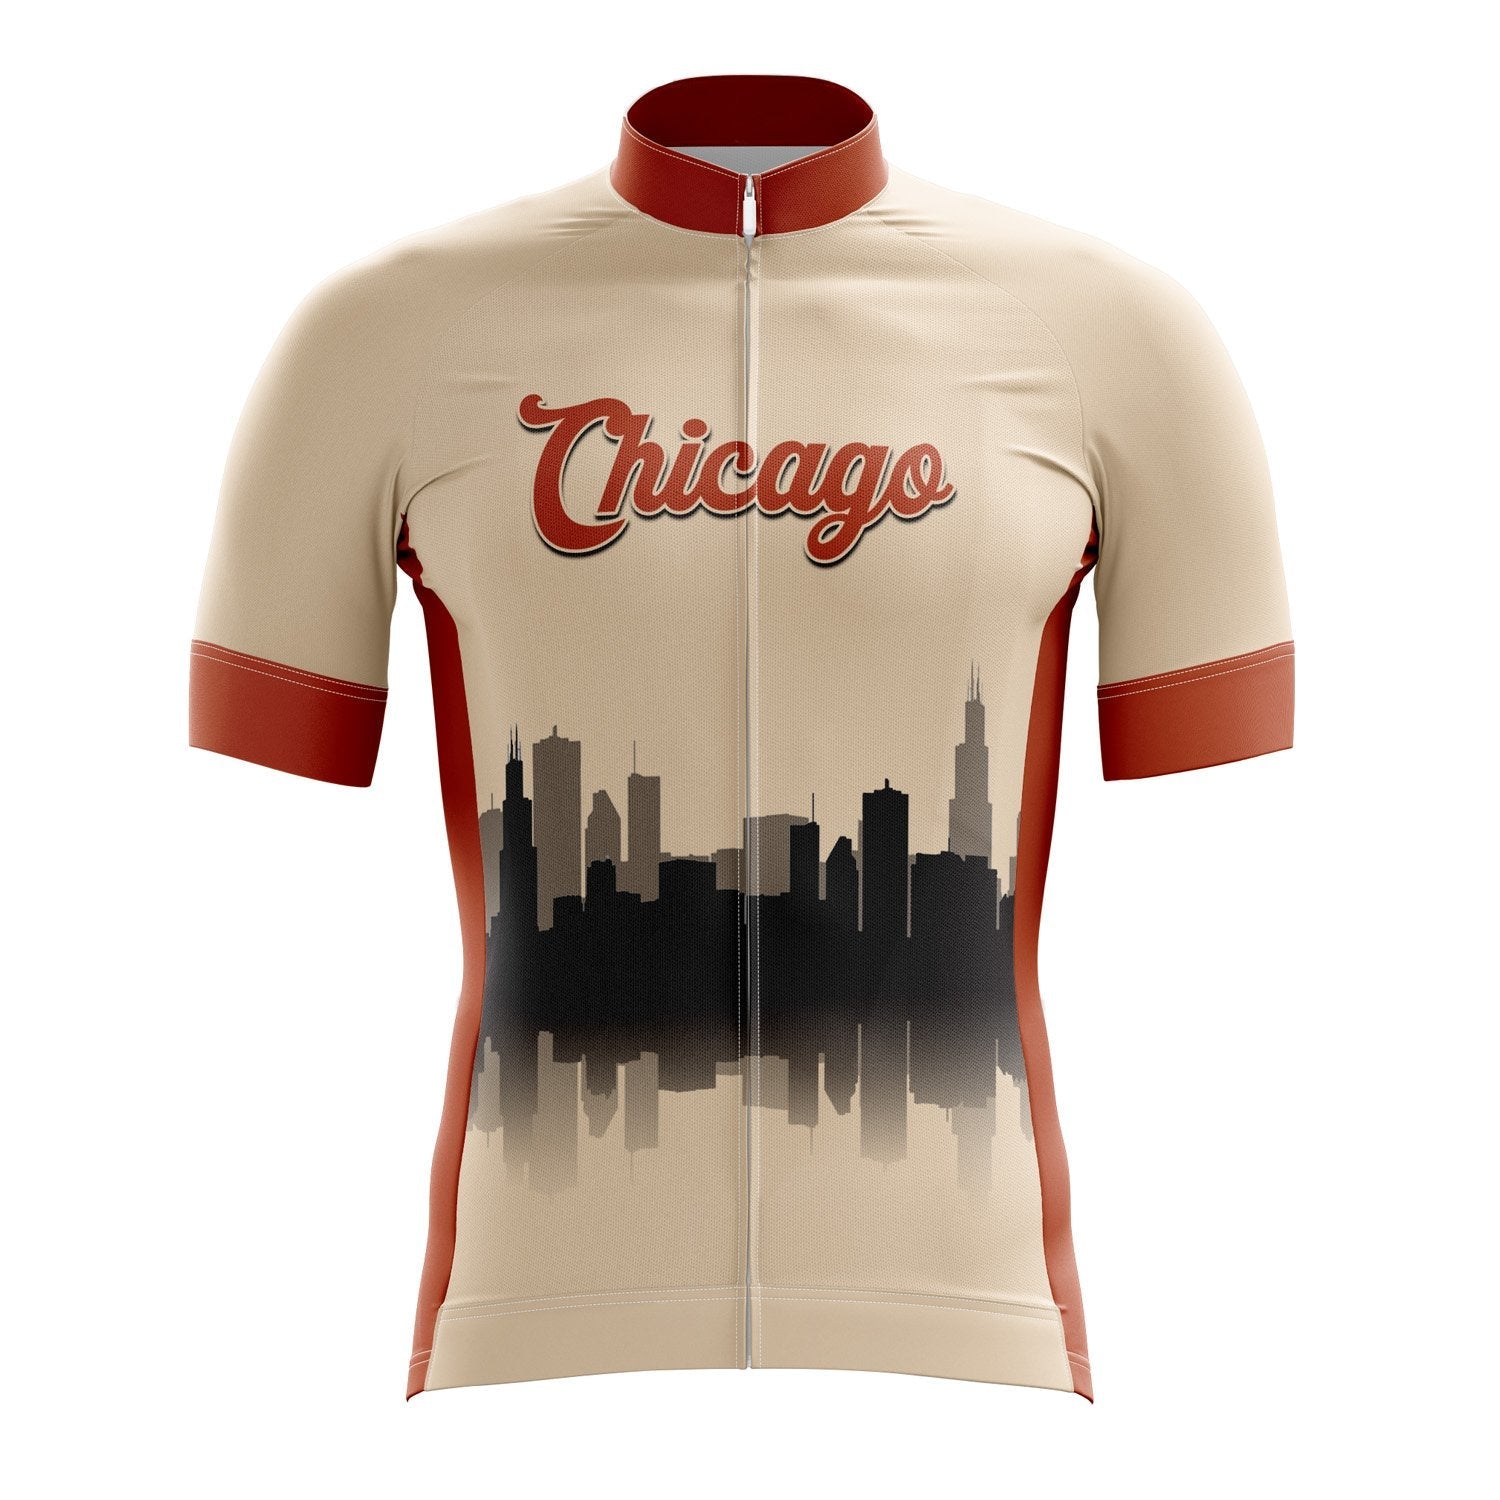 Chicago Cycling Jersey | USA States Cycling Jerseys XXL